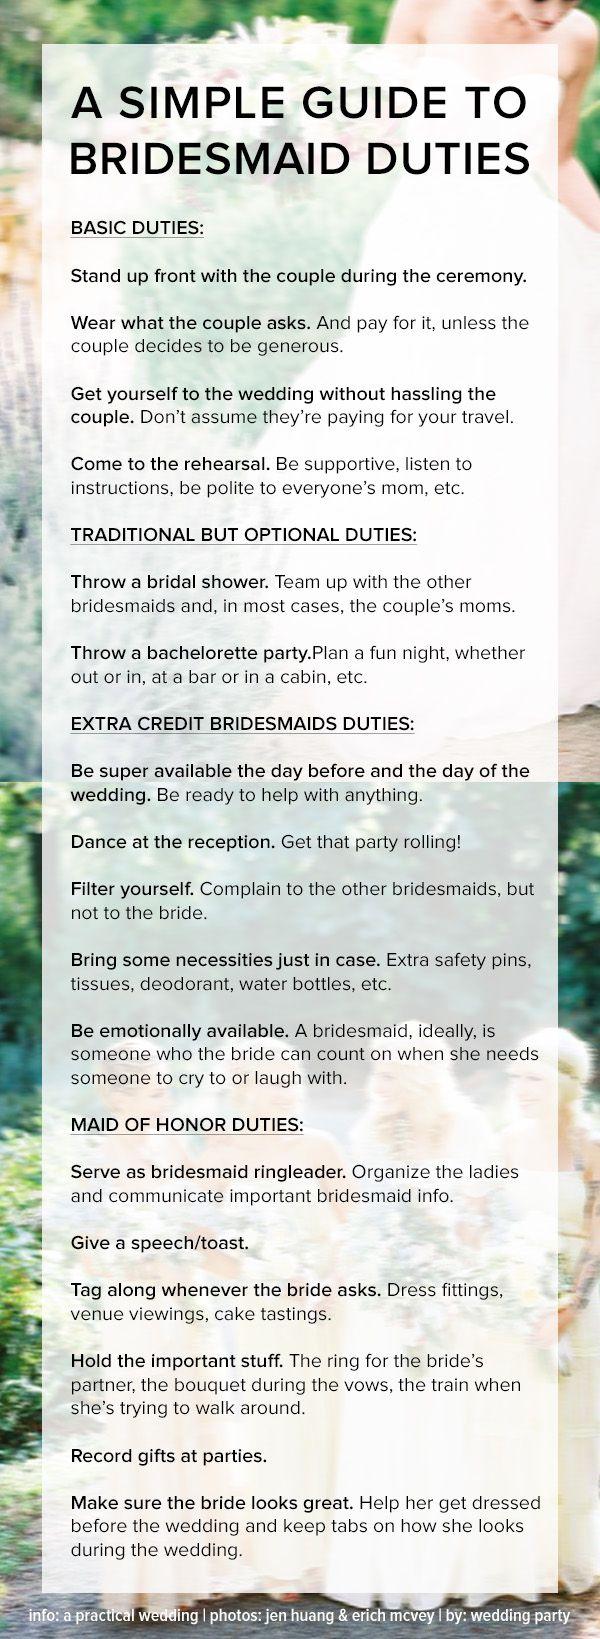 زفاف - A Simple Guide To Bridesmaids Duties And Etiquette